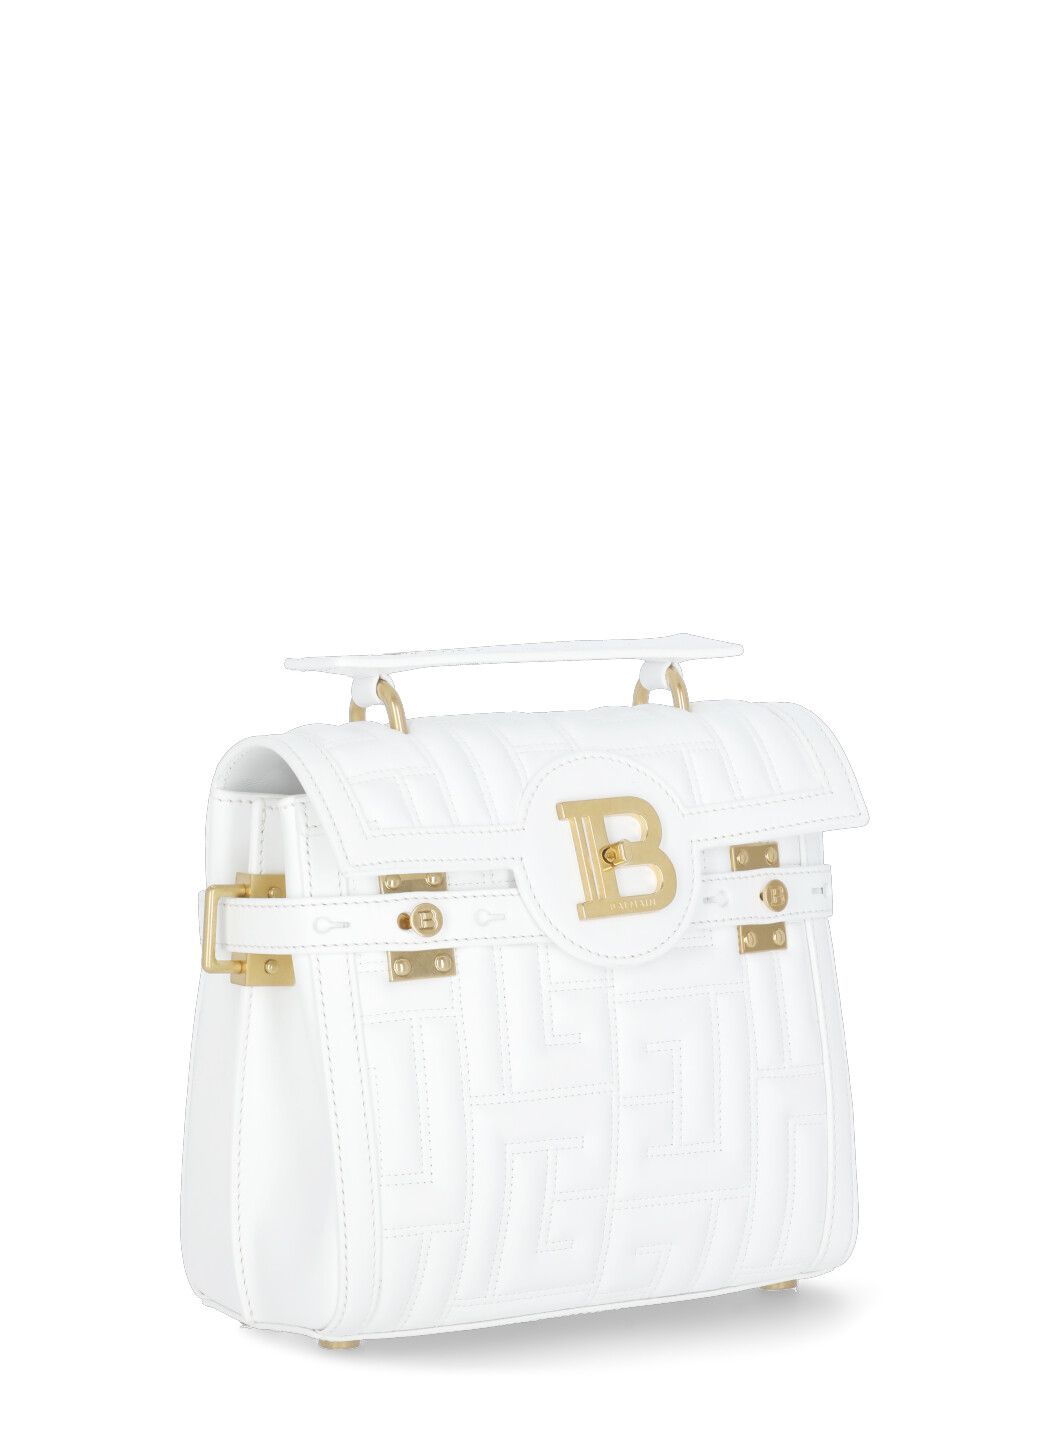 B-Buzz hand bag